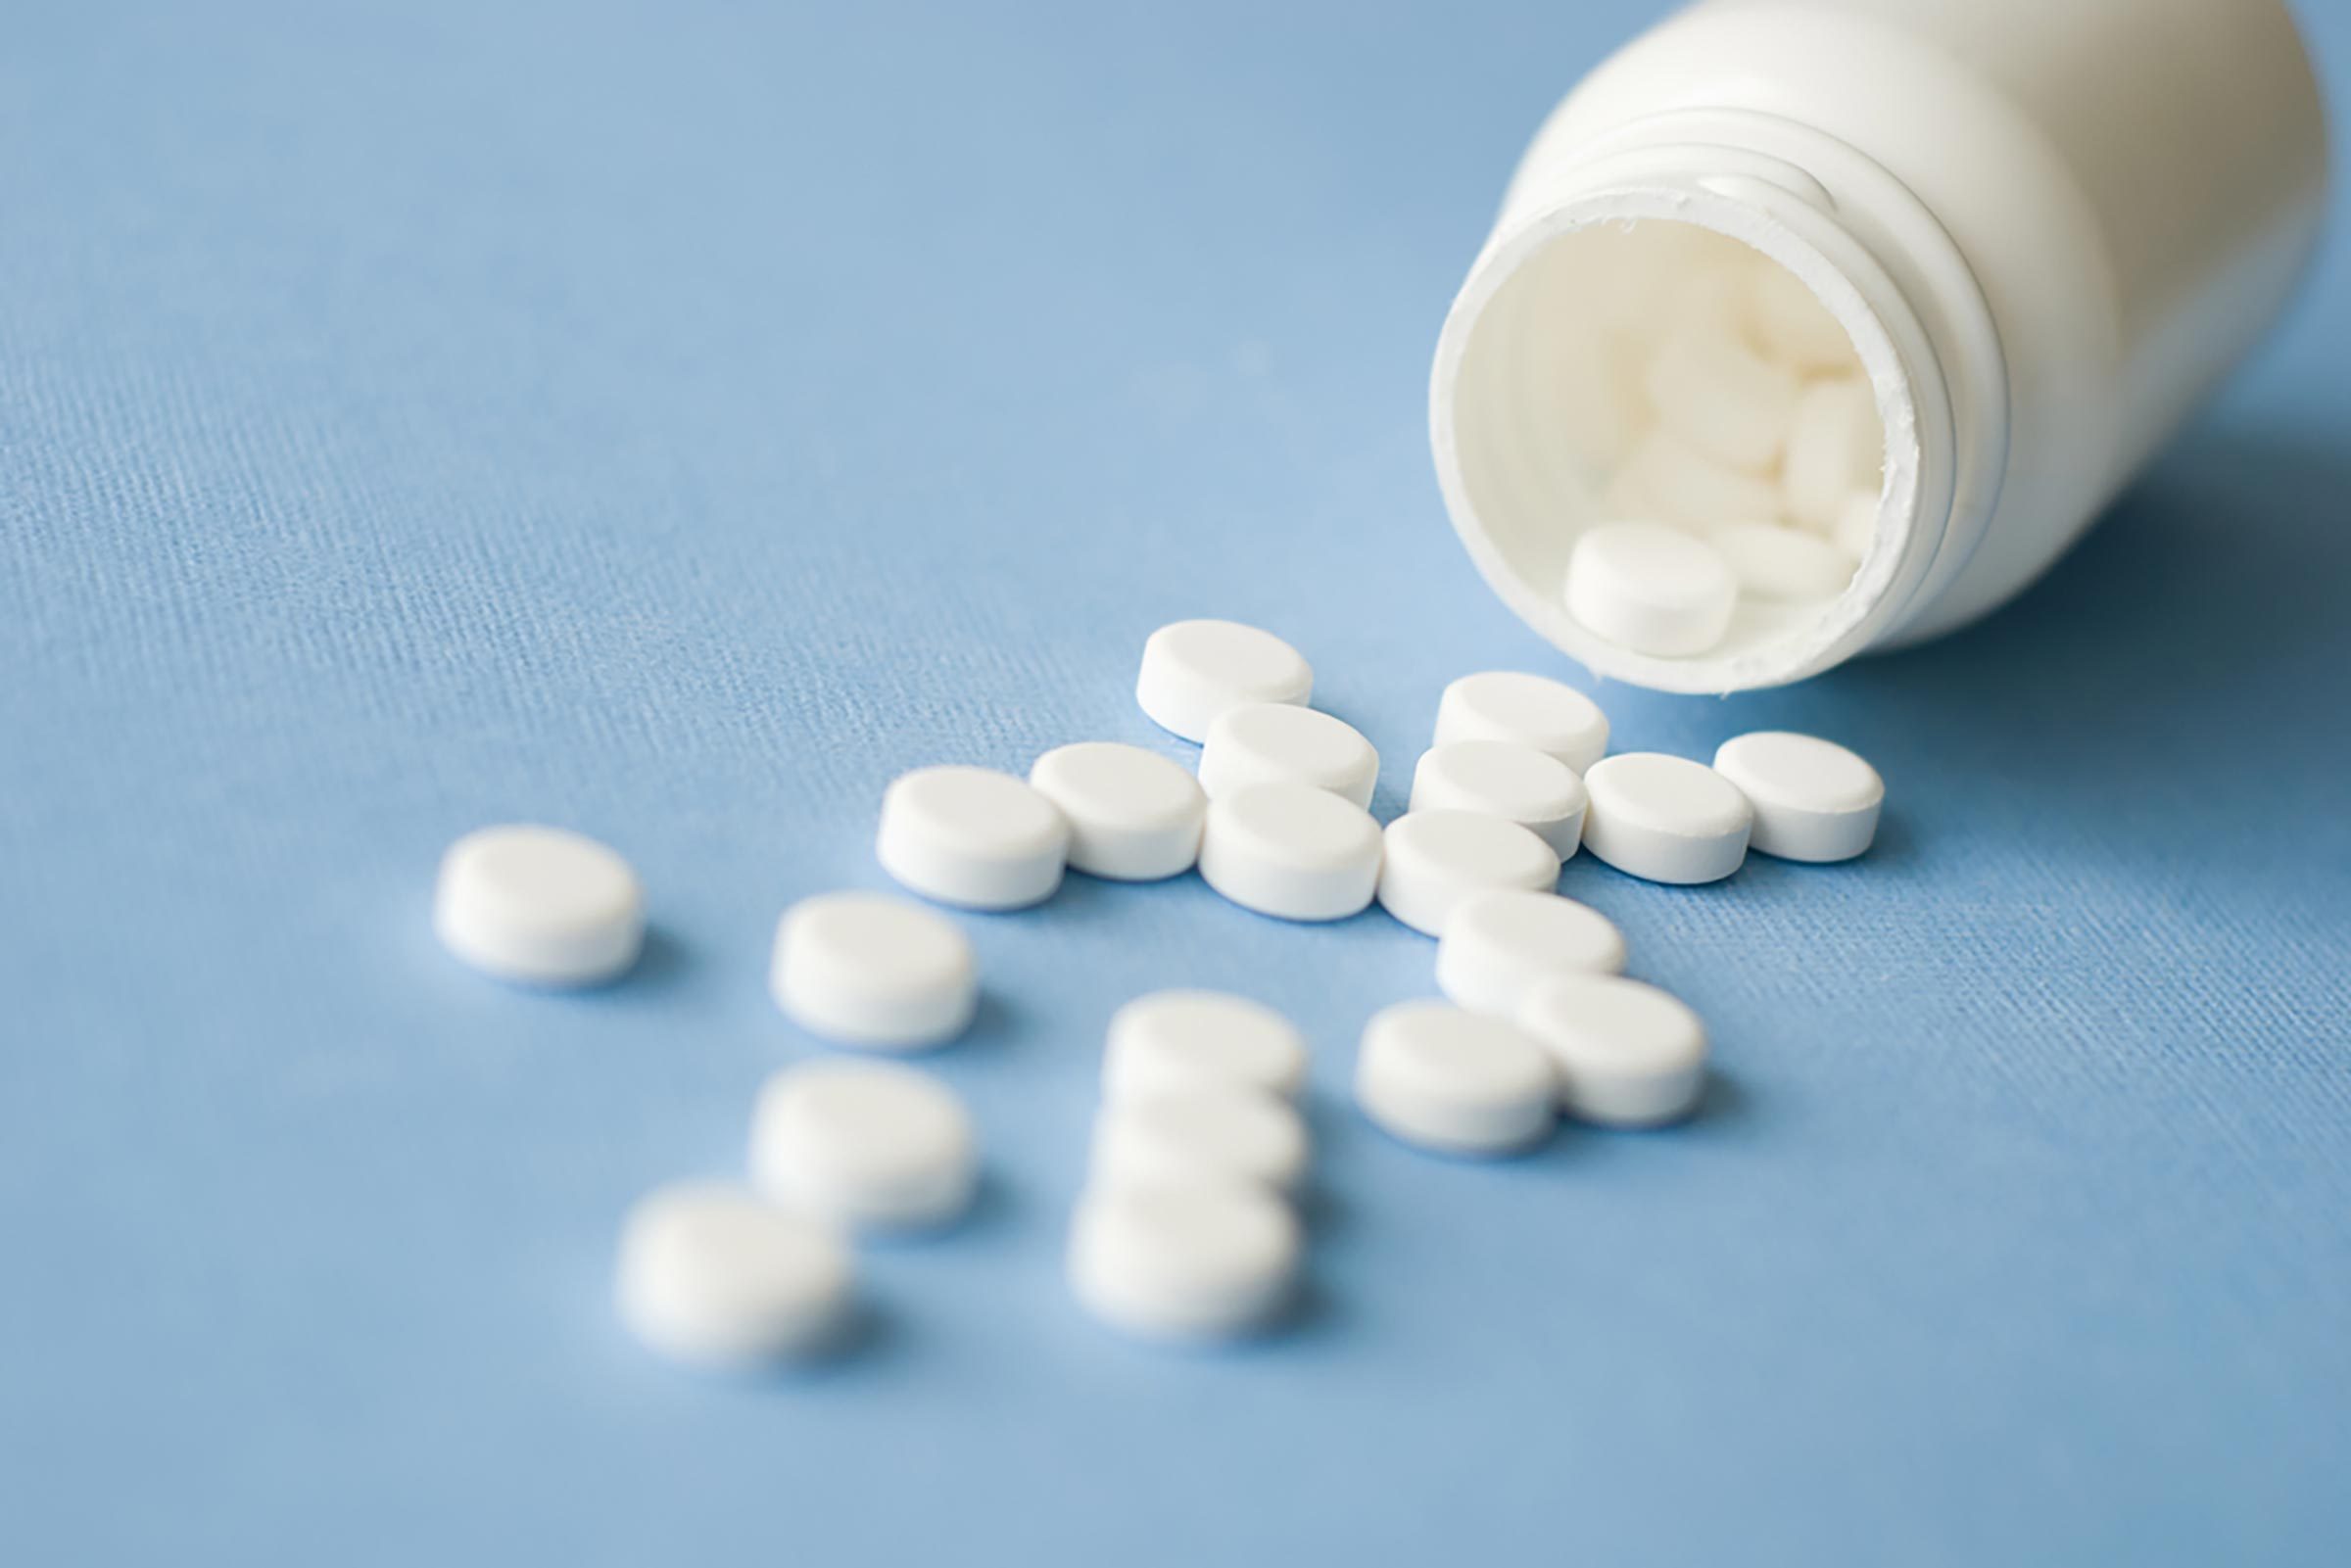 Conseil santé : ne pas sauter le placebo des pilules contraceptives